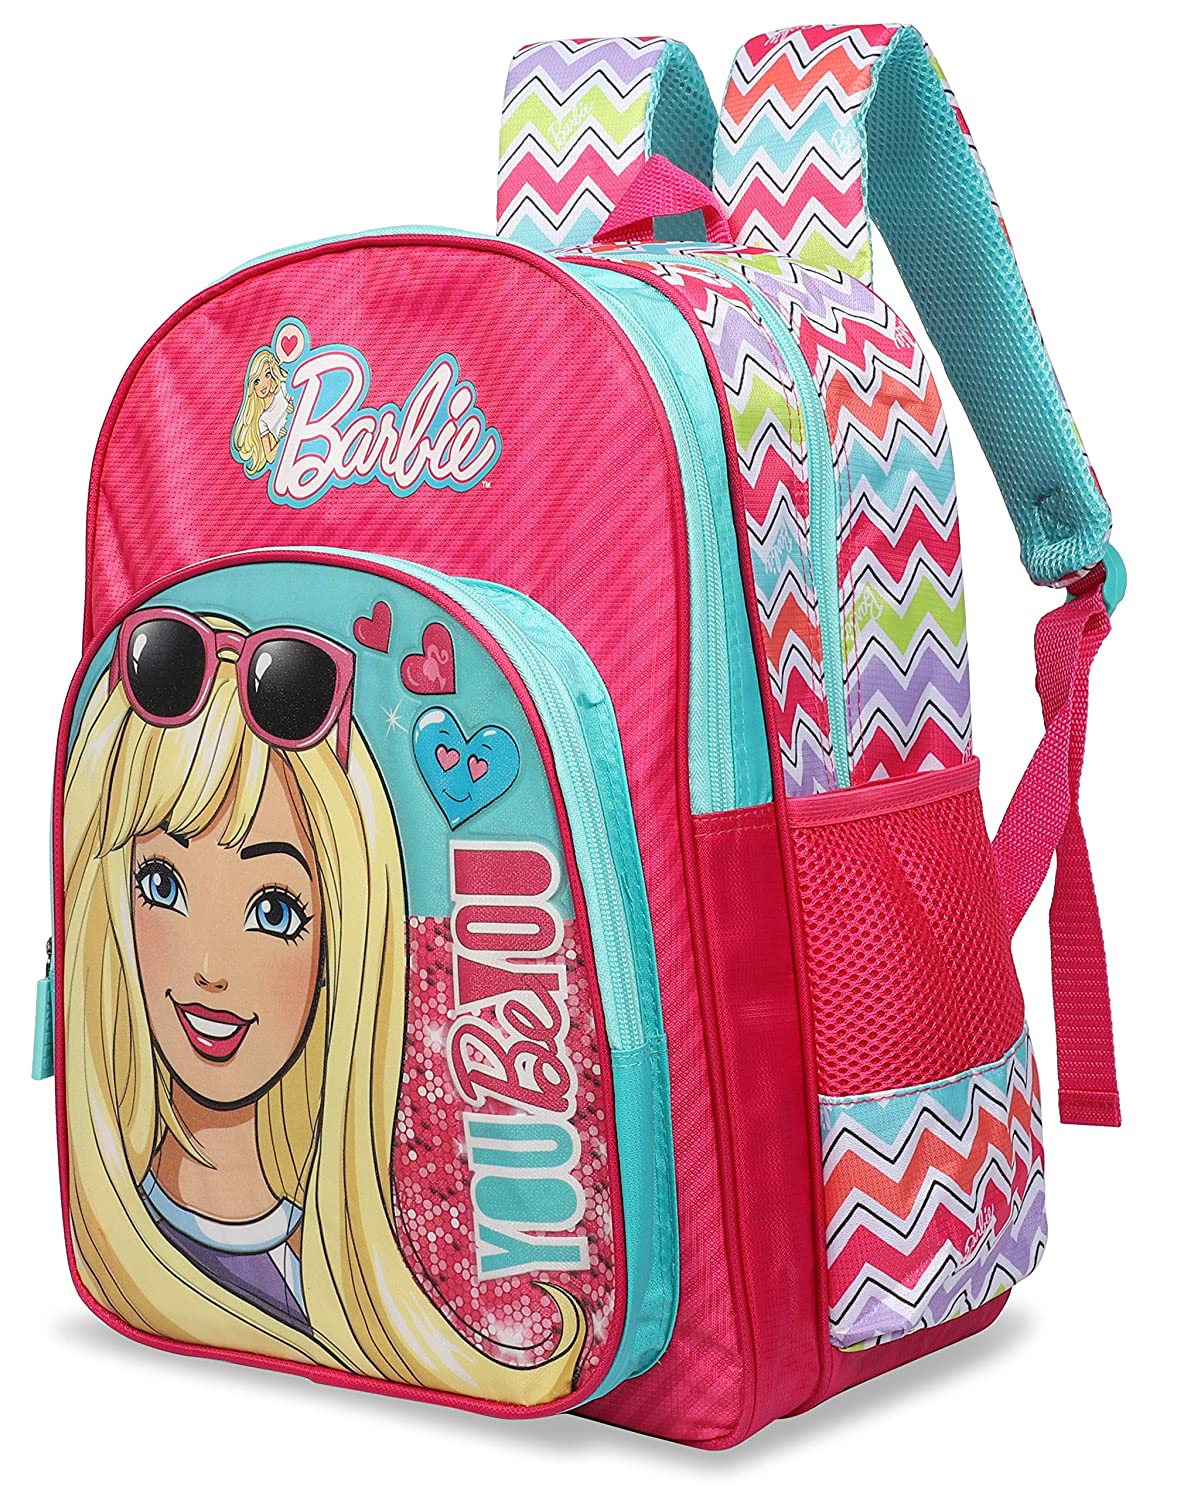 Barbie Extendable School Backpack Round Giochi Preziosi |Futurartshop